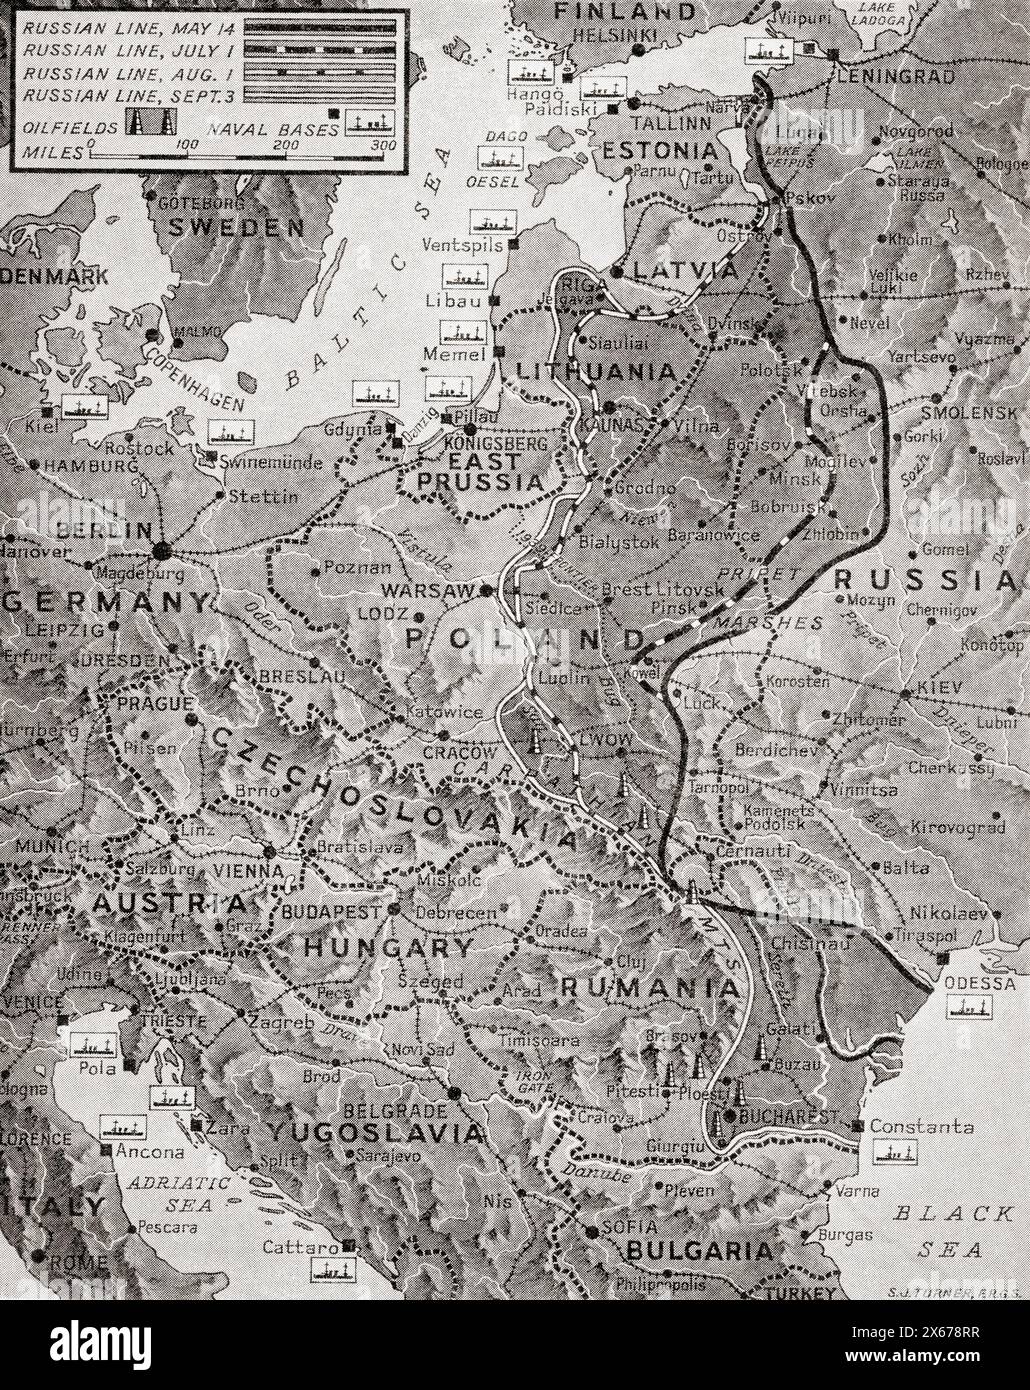 Karte, die den Vormarsch der russischen Armee in ihrem Bemühen zeigt, den Feind auszulöschen, August 1944. Aus dem Krieg in Bildern, fünftes Jahr. Stockfoto